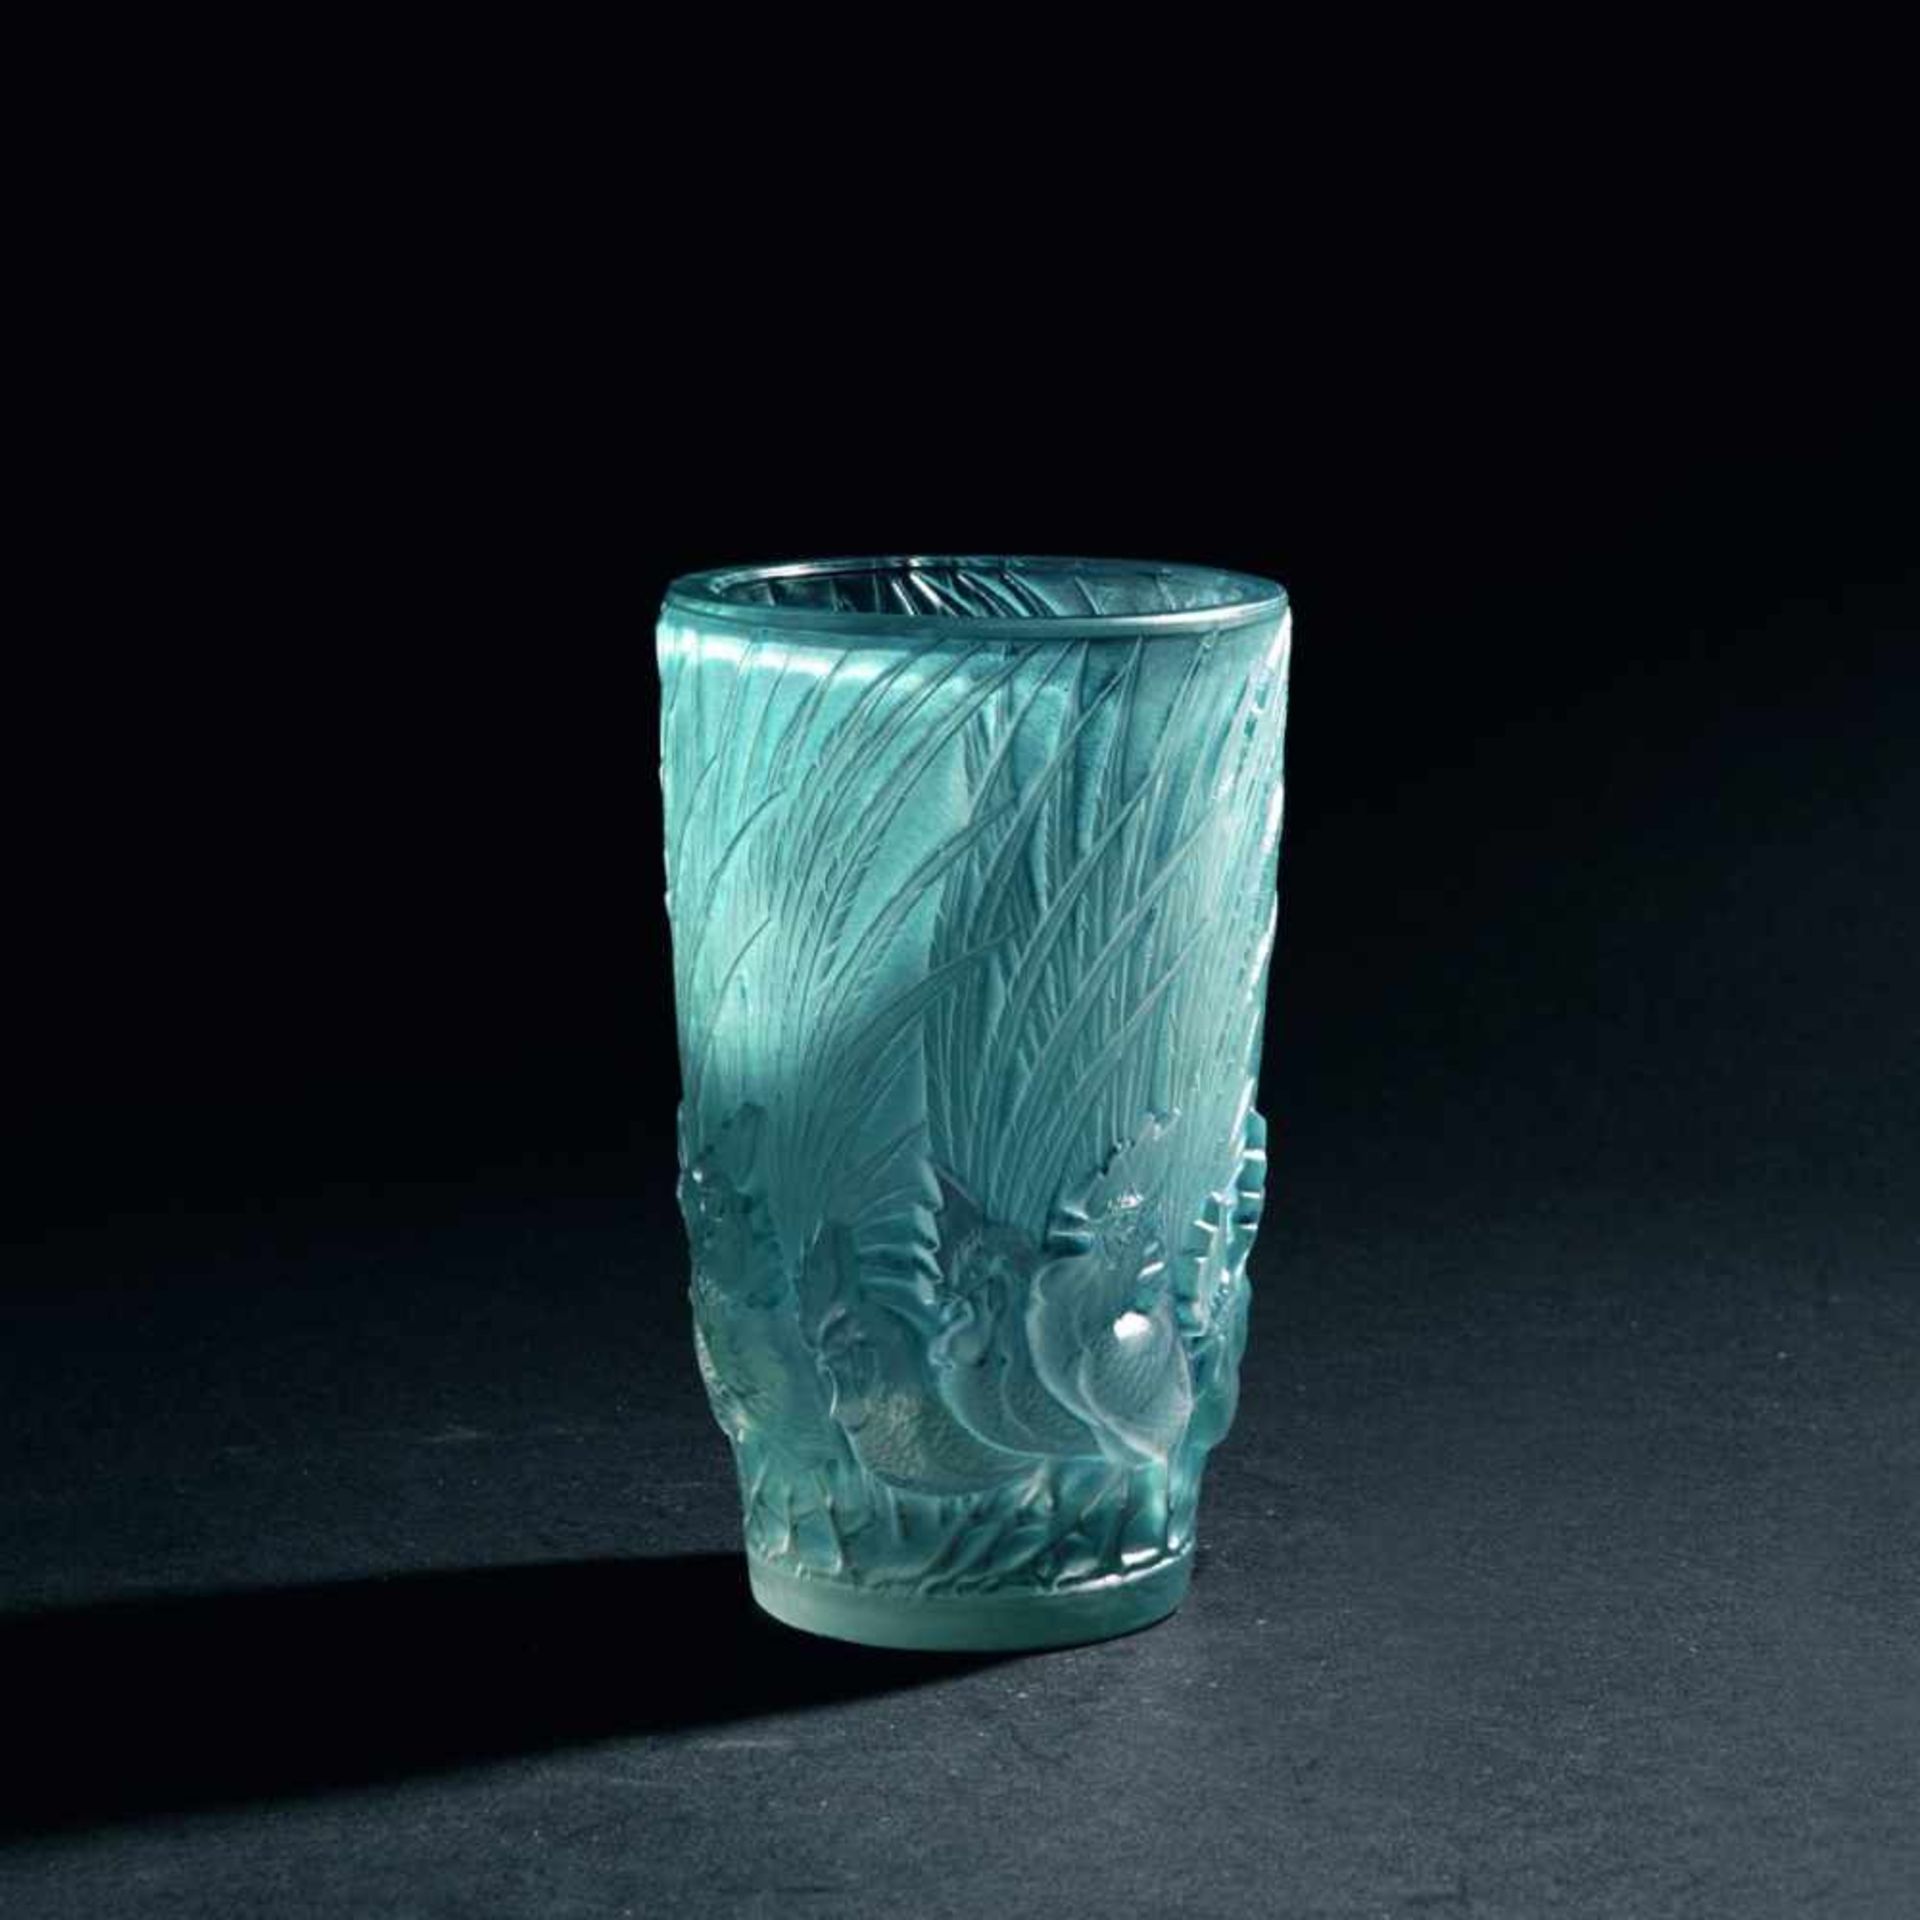 Rene Lalique, 'Coqs et Plumes' vase, 1928'Coqs et Plumes' vase, 1928H. 15.5 cm. Clear moulded glass,